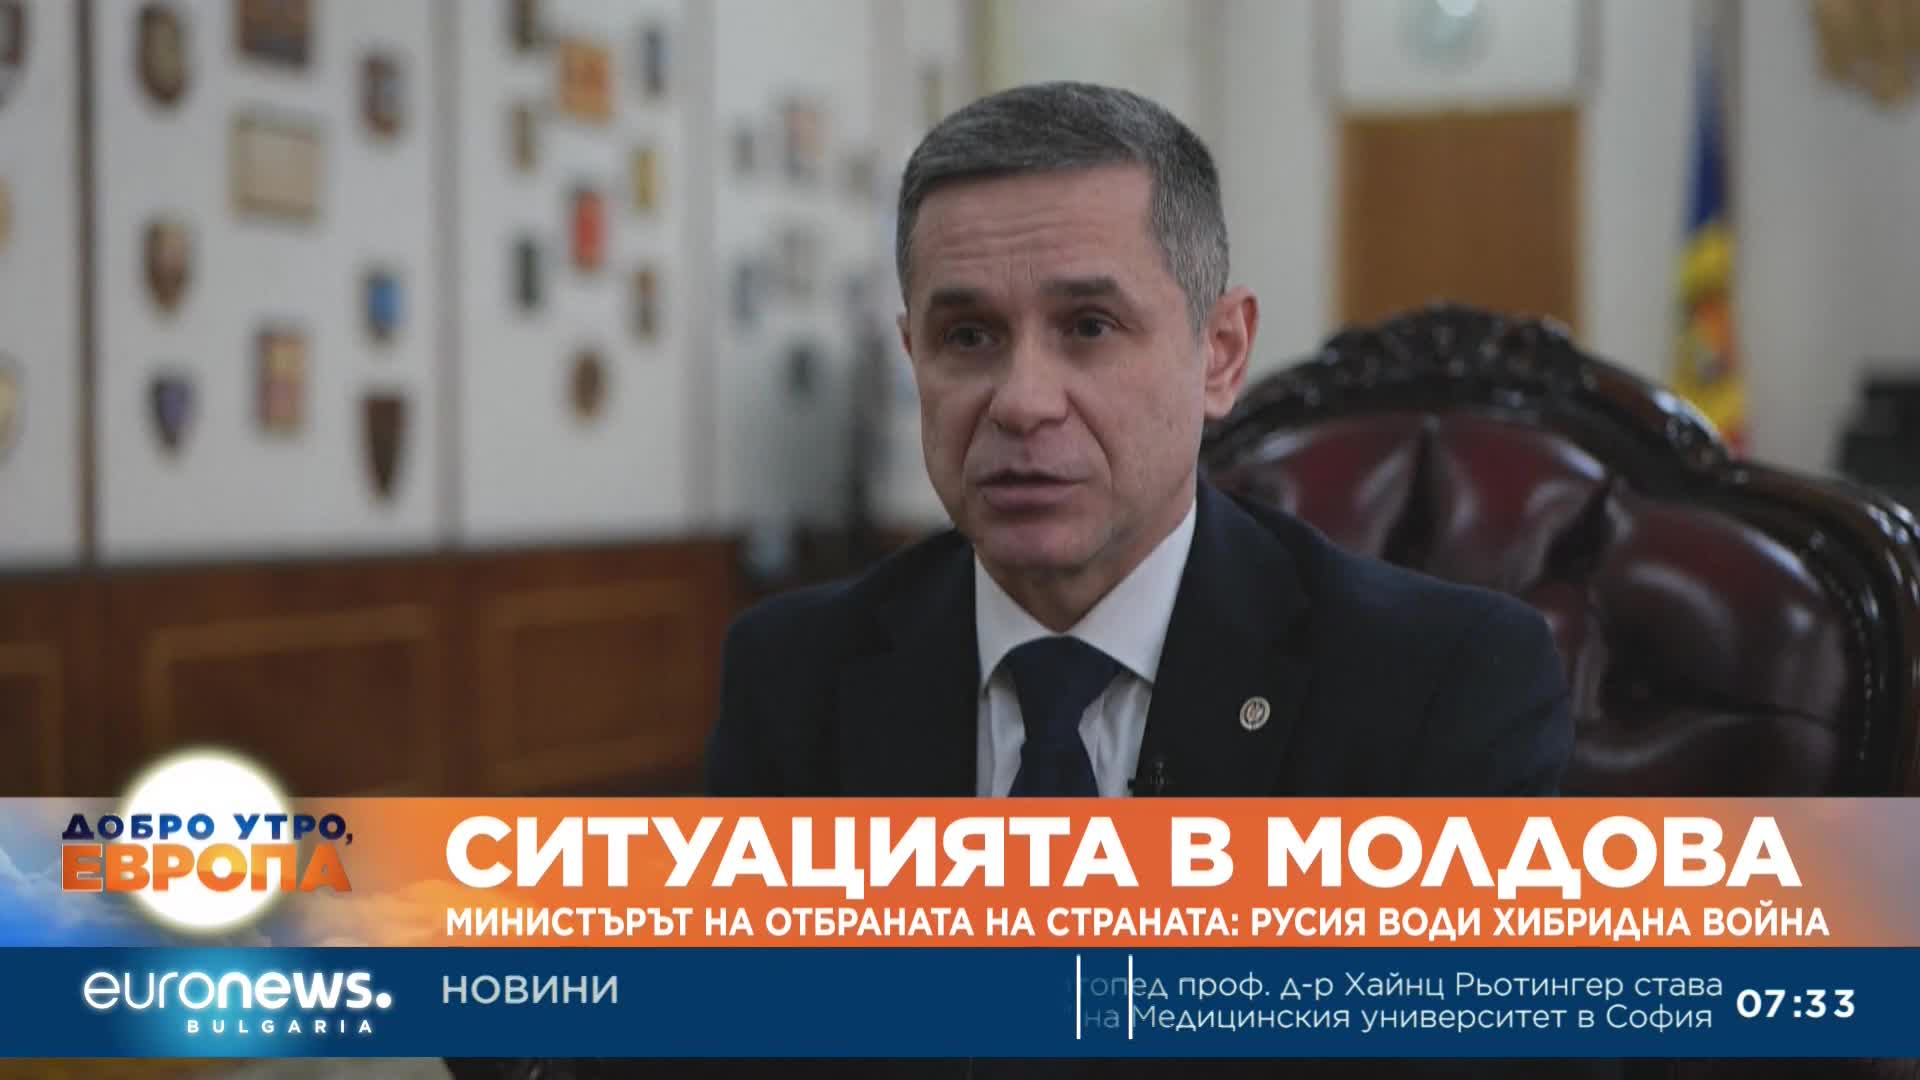 Министърът на отбраната в Молдова: Русия води хибридна война